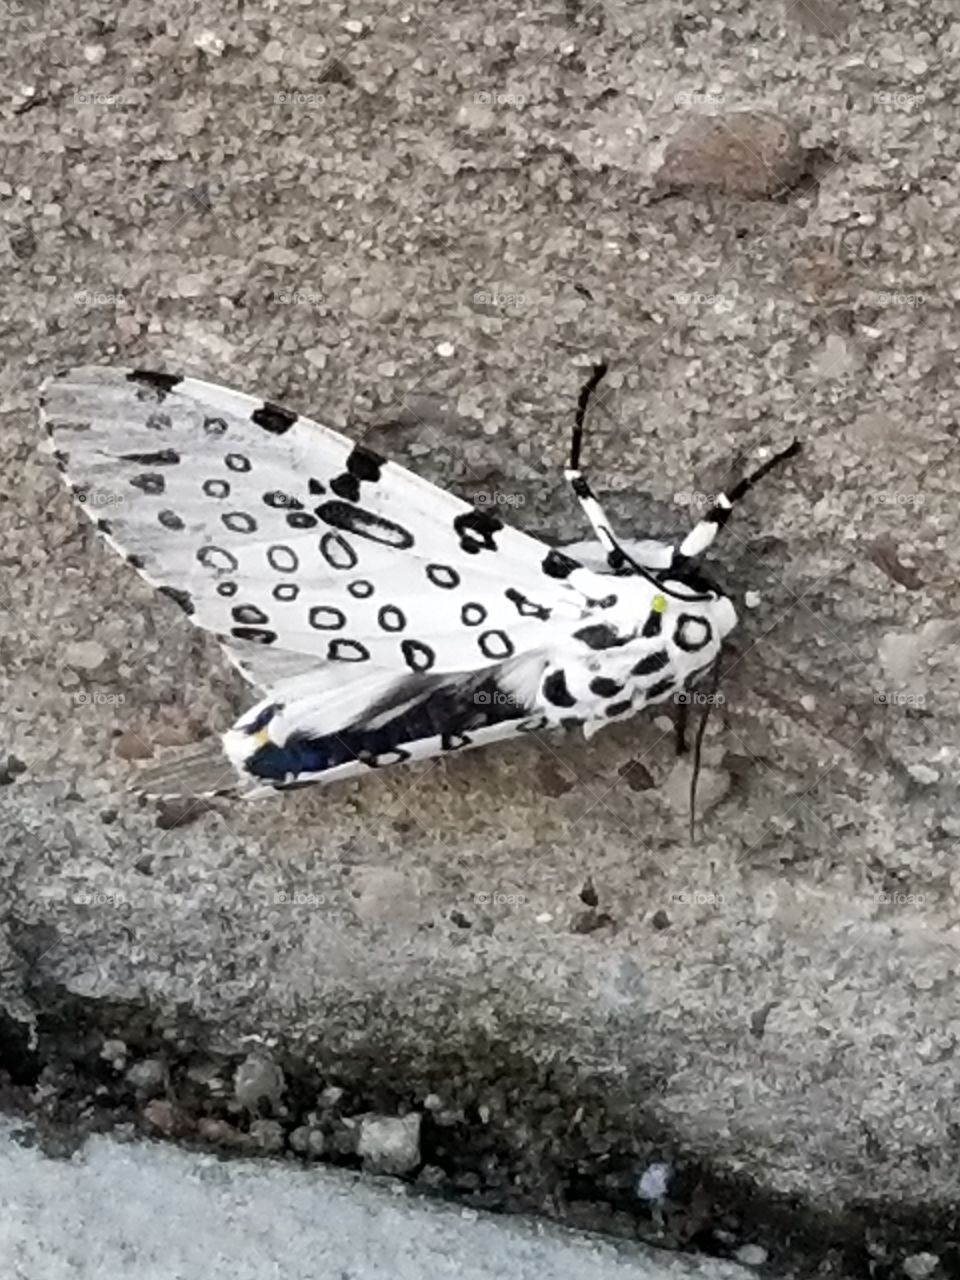 Mothe in Texas